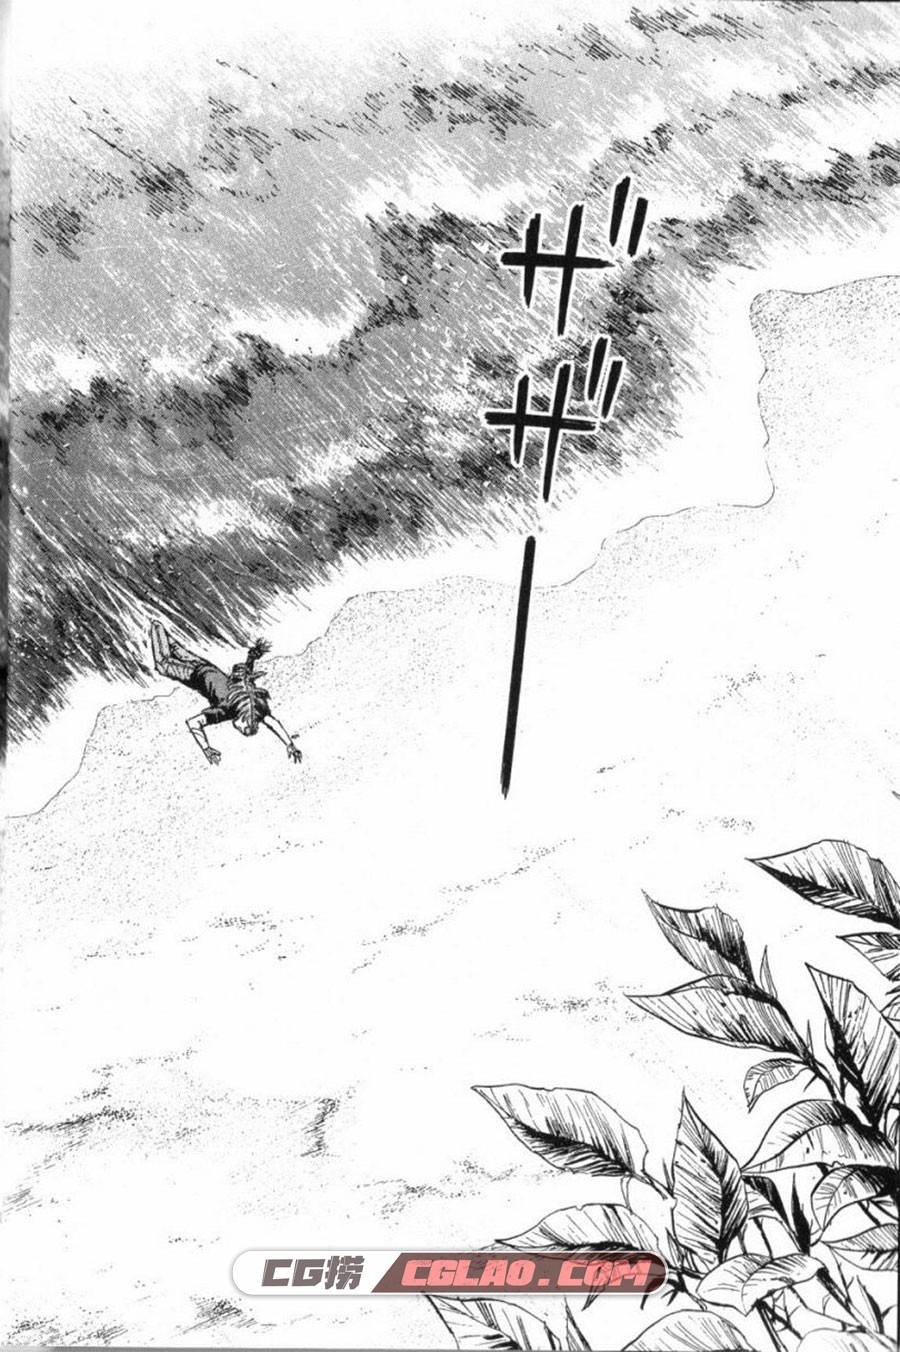 彼岸岛2 最后的47天 松本光司 1-16卷 恐怖漫画全集下载,第1卷_0003.jpg